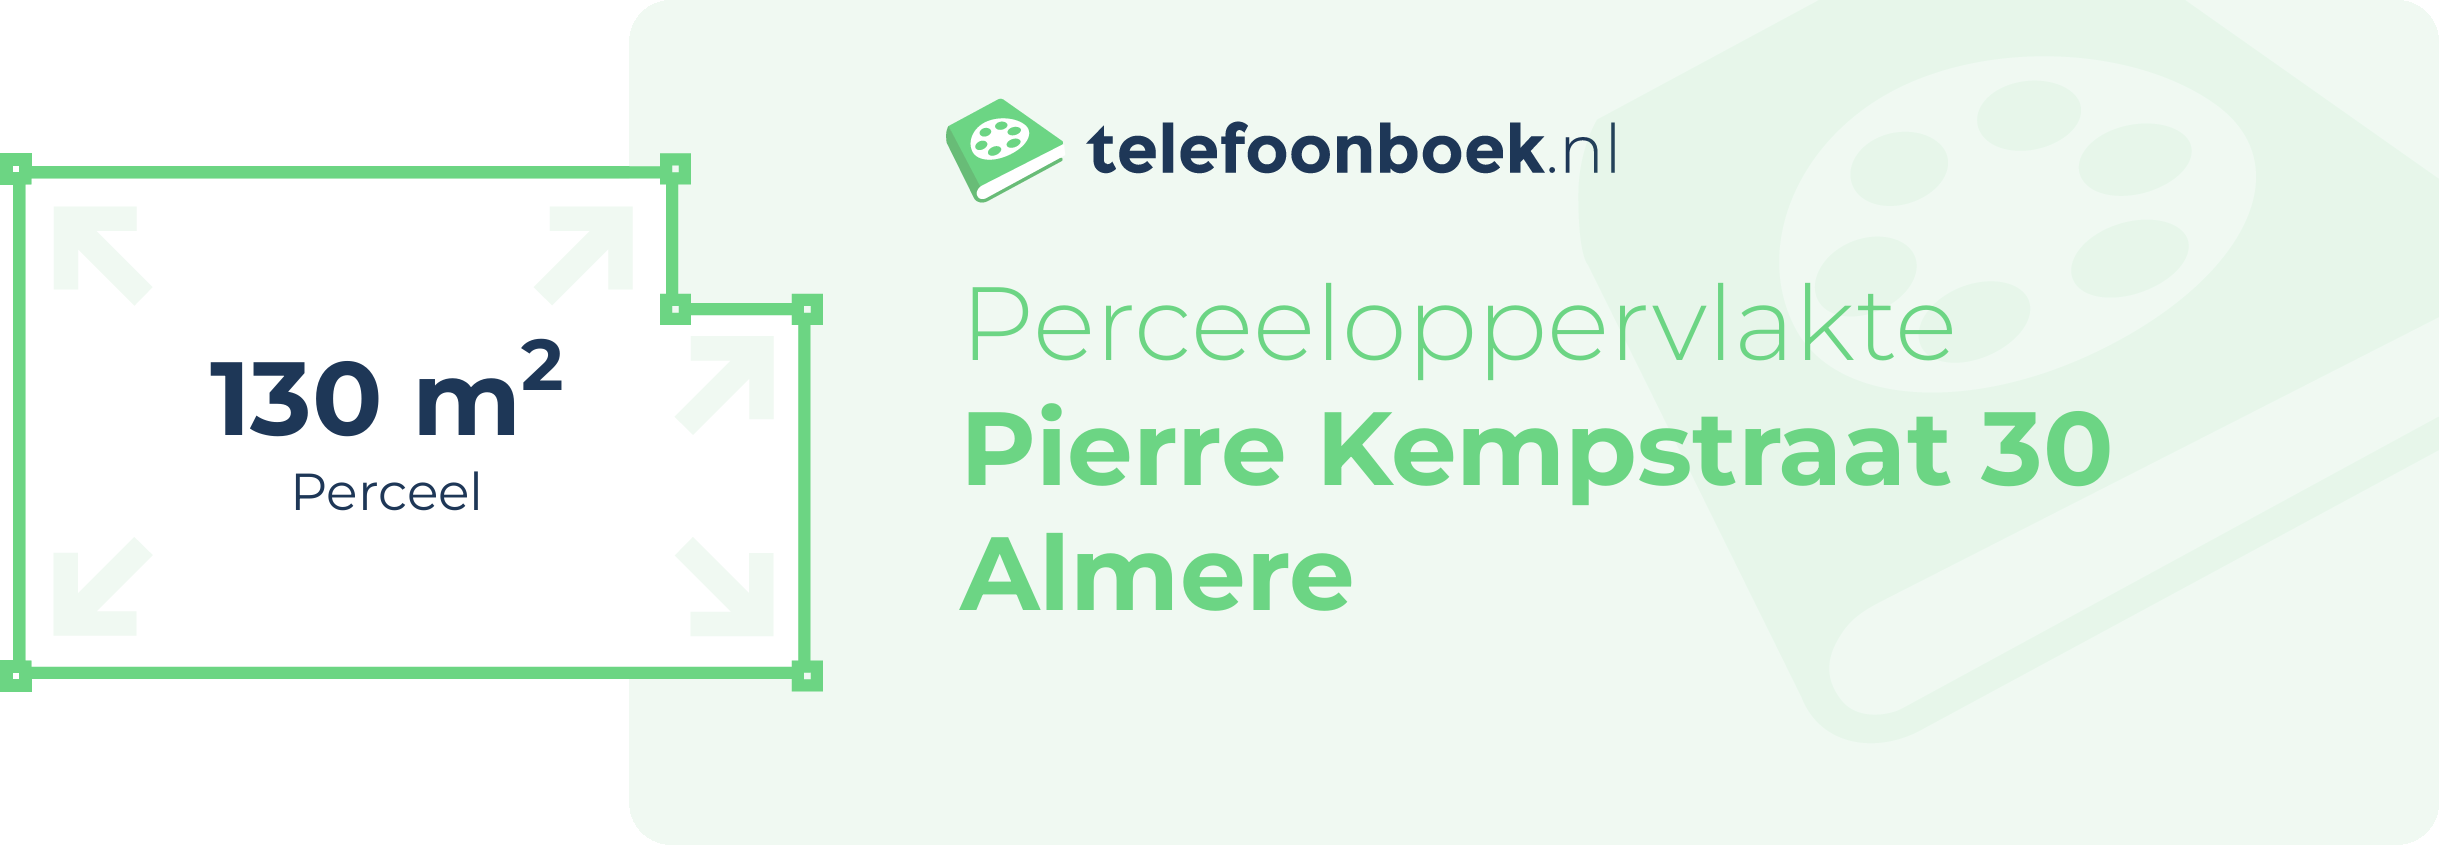 Perceeloppervlakte Pierre Kempstraat 30 Almere